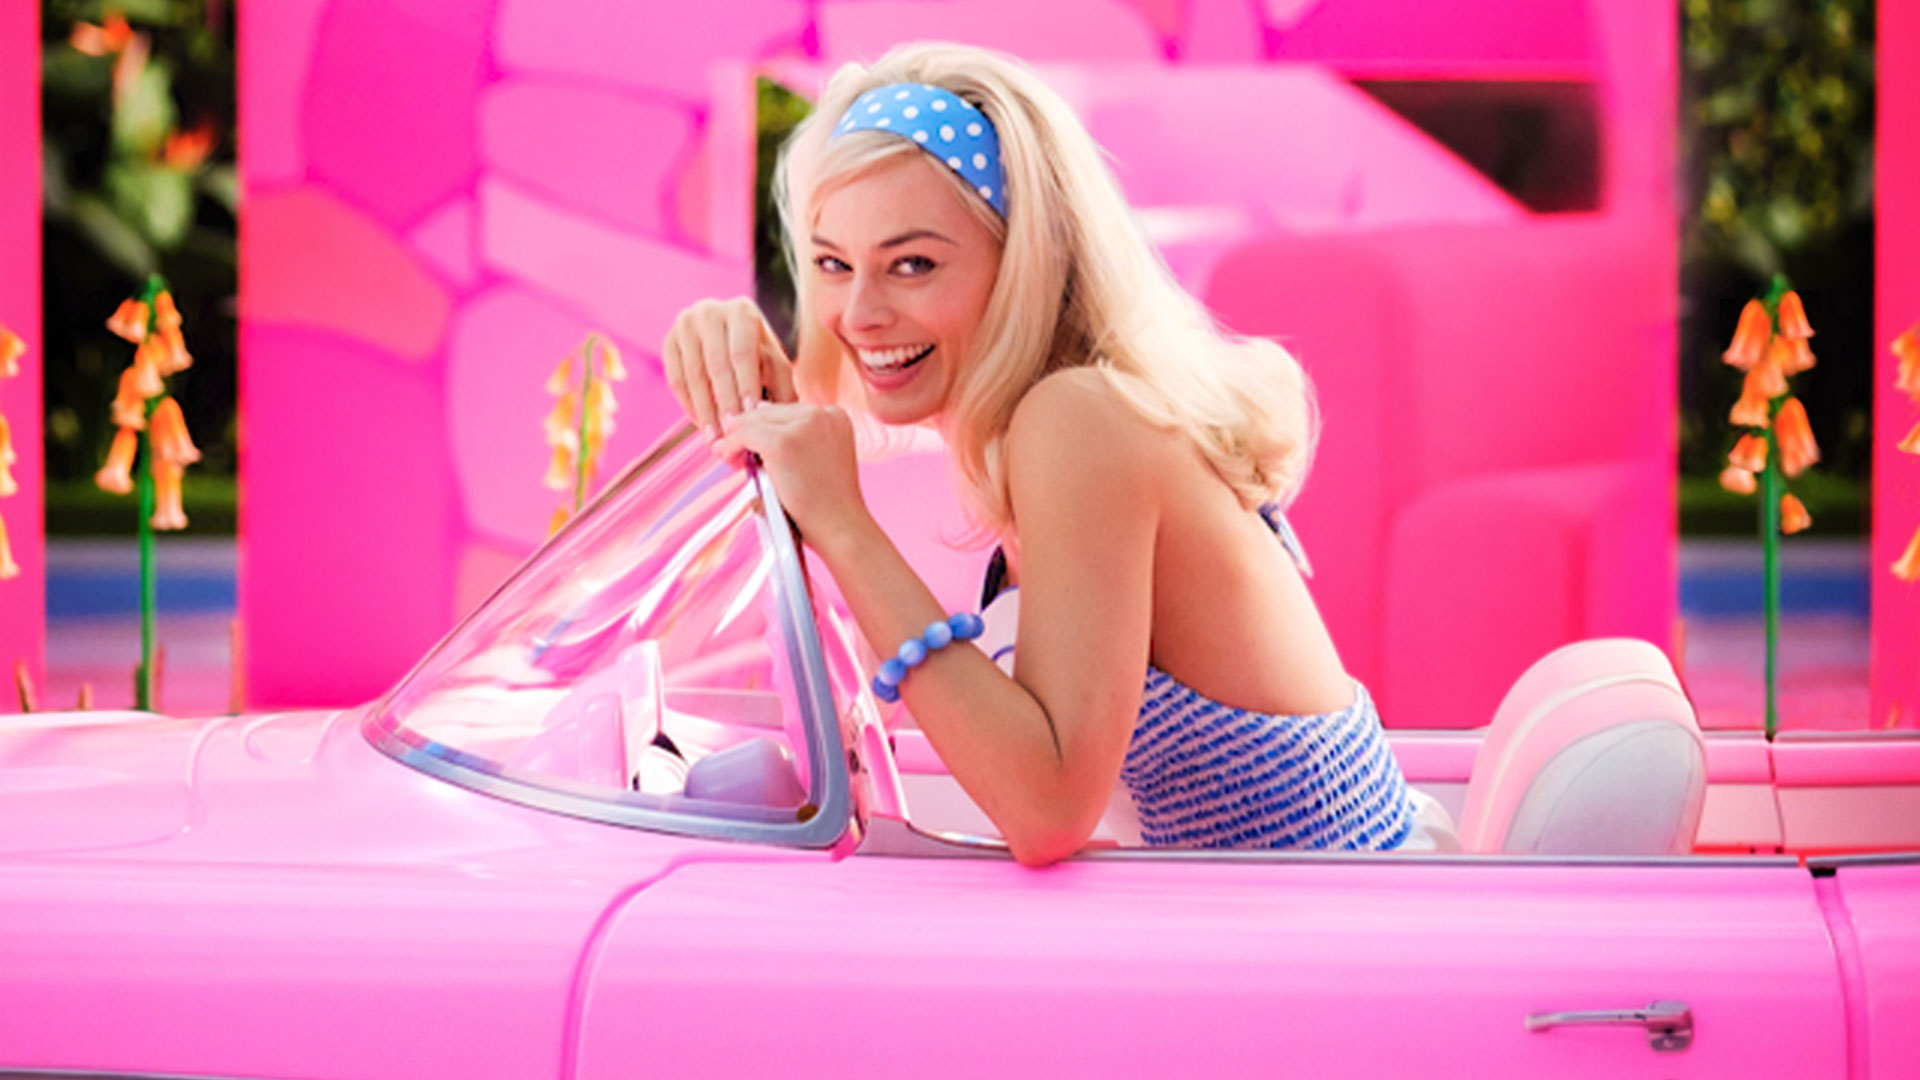 Falta un año para su estreno y ya todos hablan del film: ¿qué hay detrás de la Barbie interpretada por Margot Robbie?